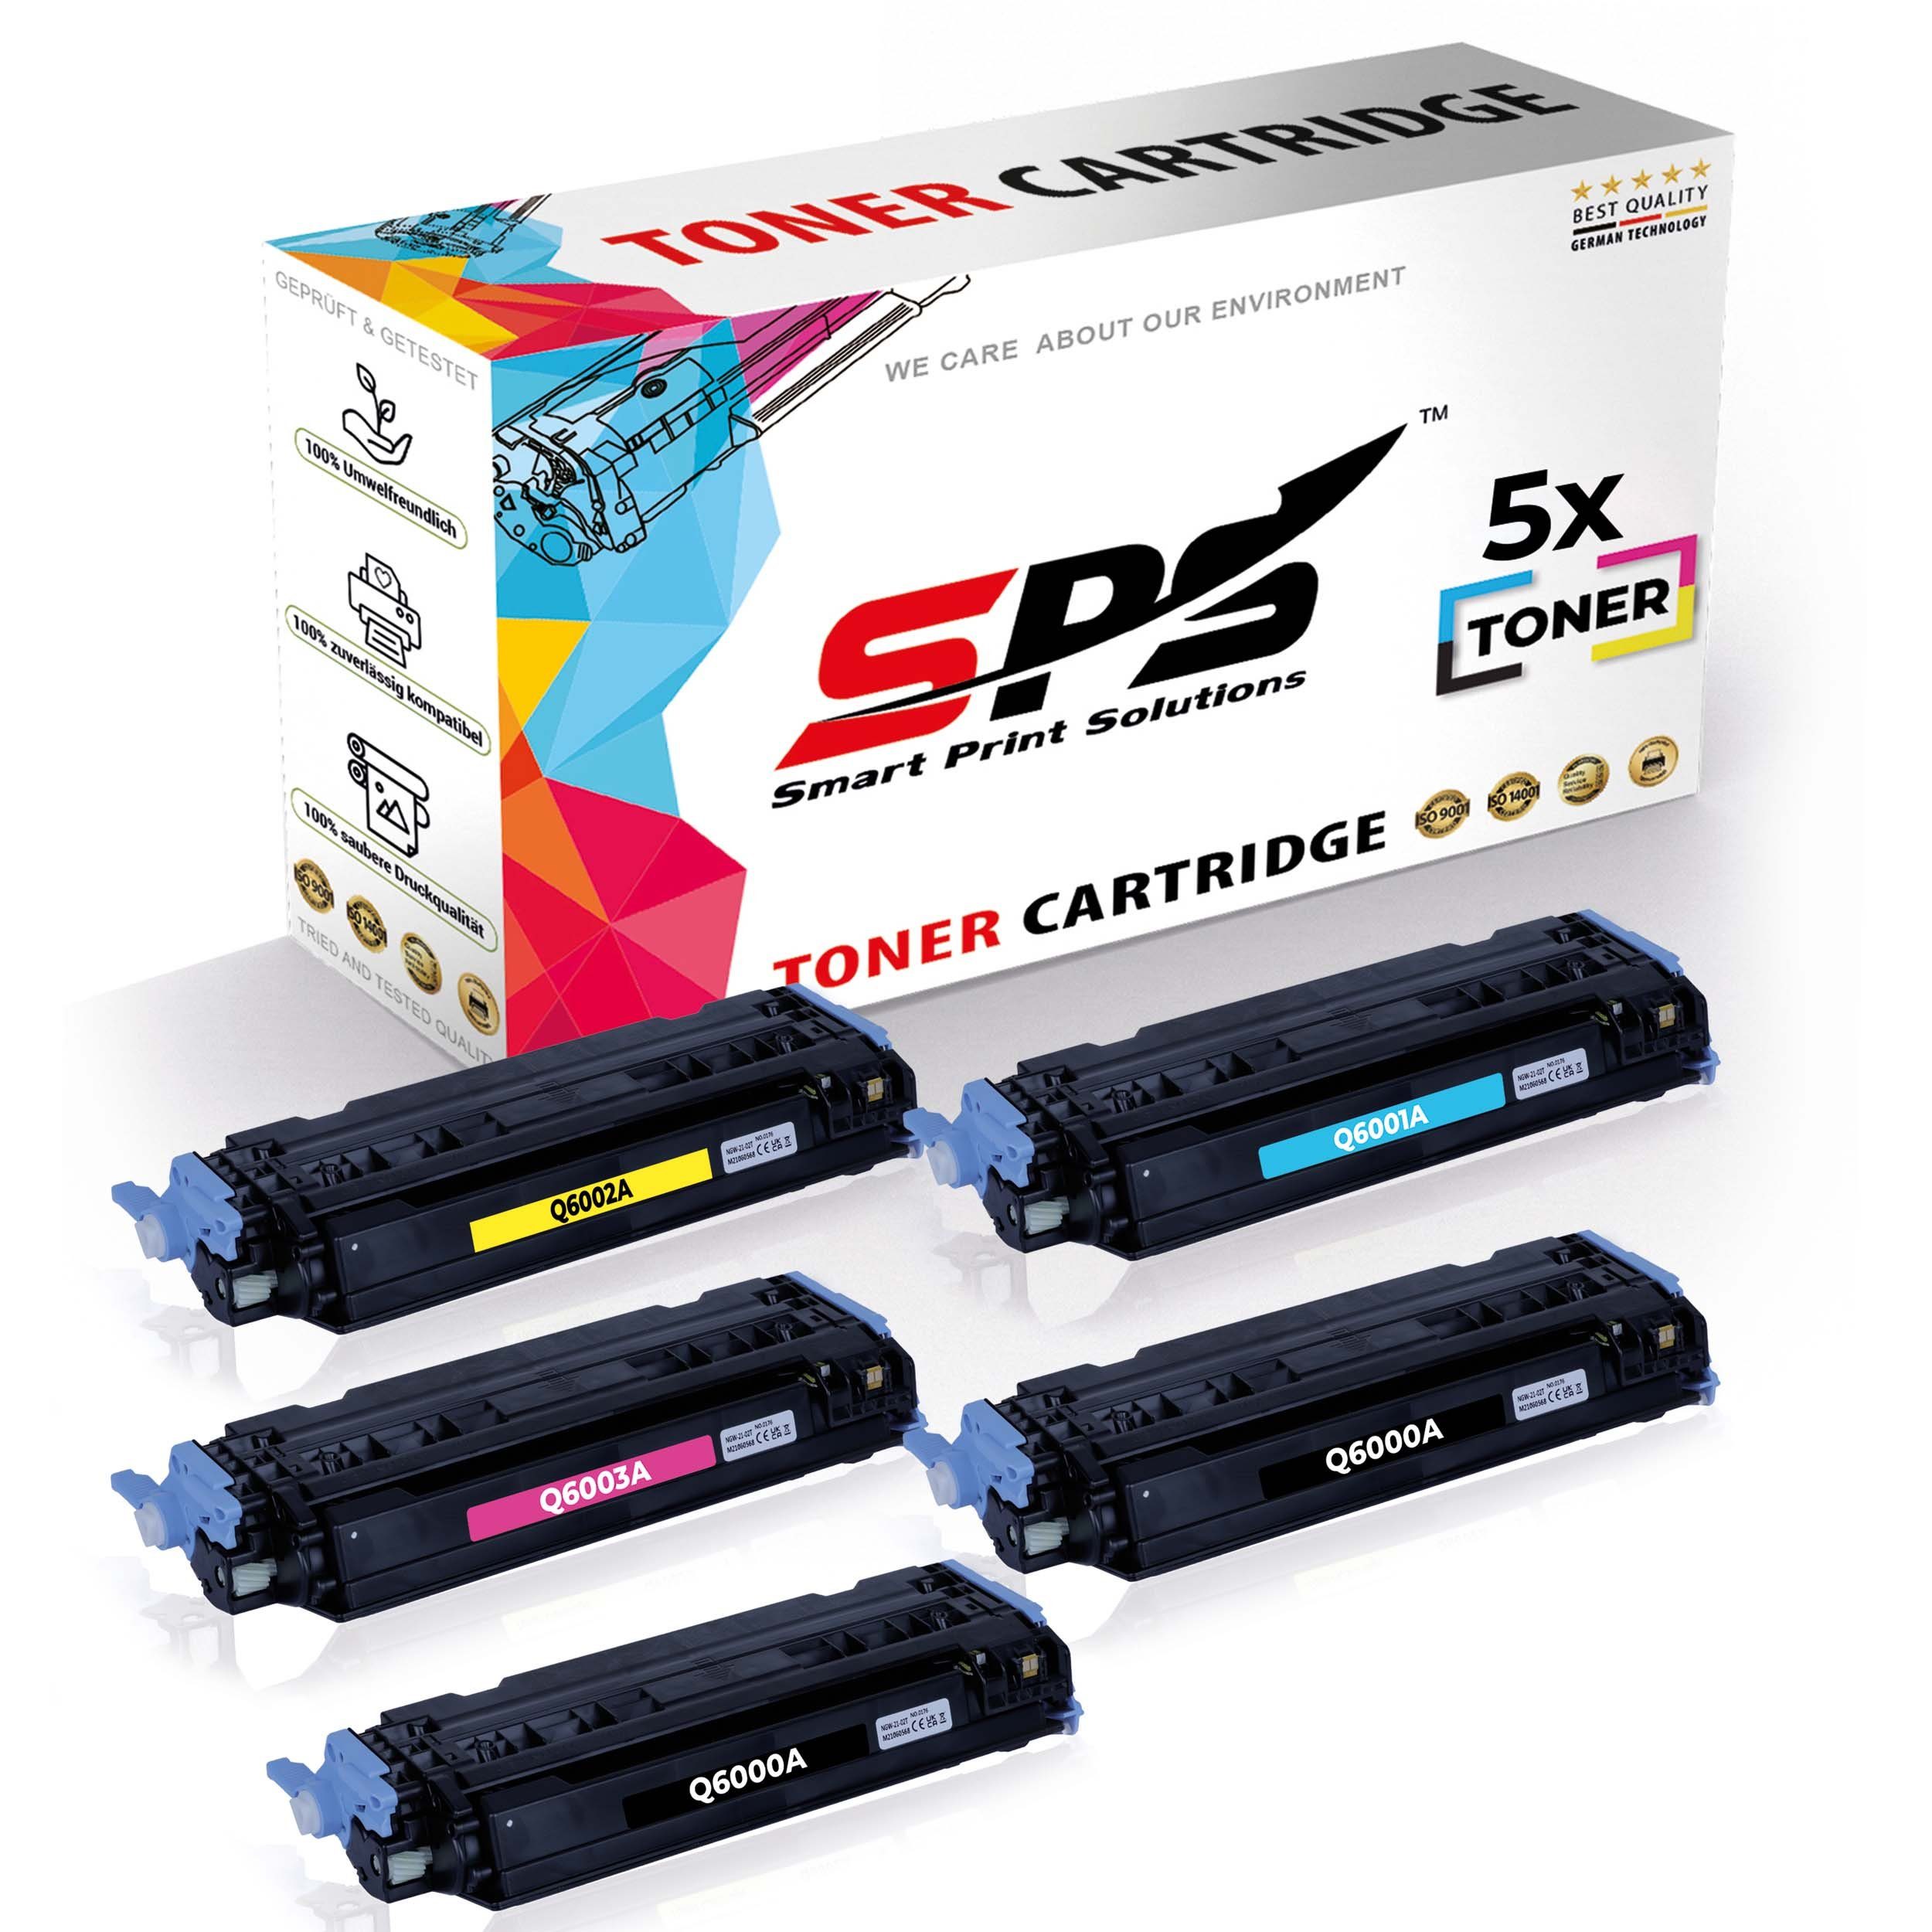 SPS Tonerkartusche 5x Multipack Set Kompatibel für HP Color Laserjet, (5er Pack, 5x Toner)